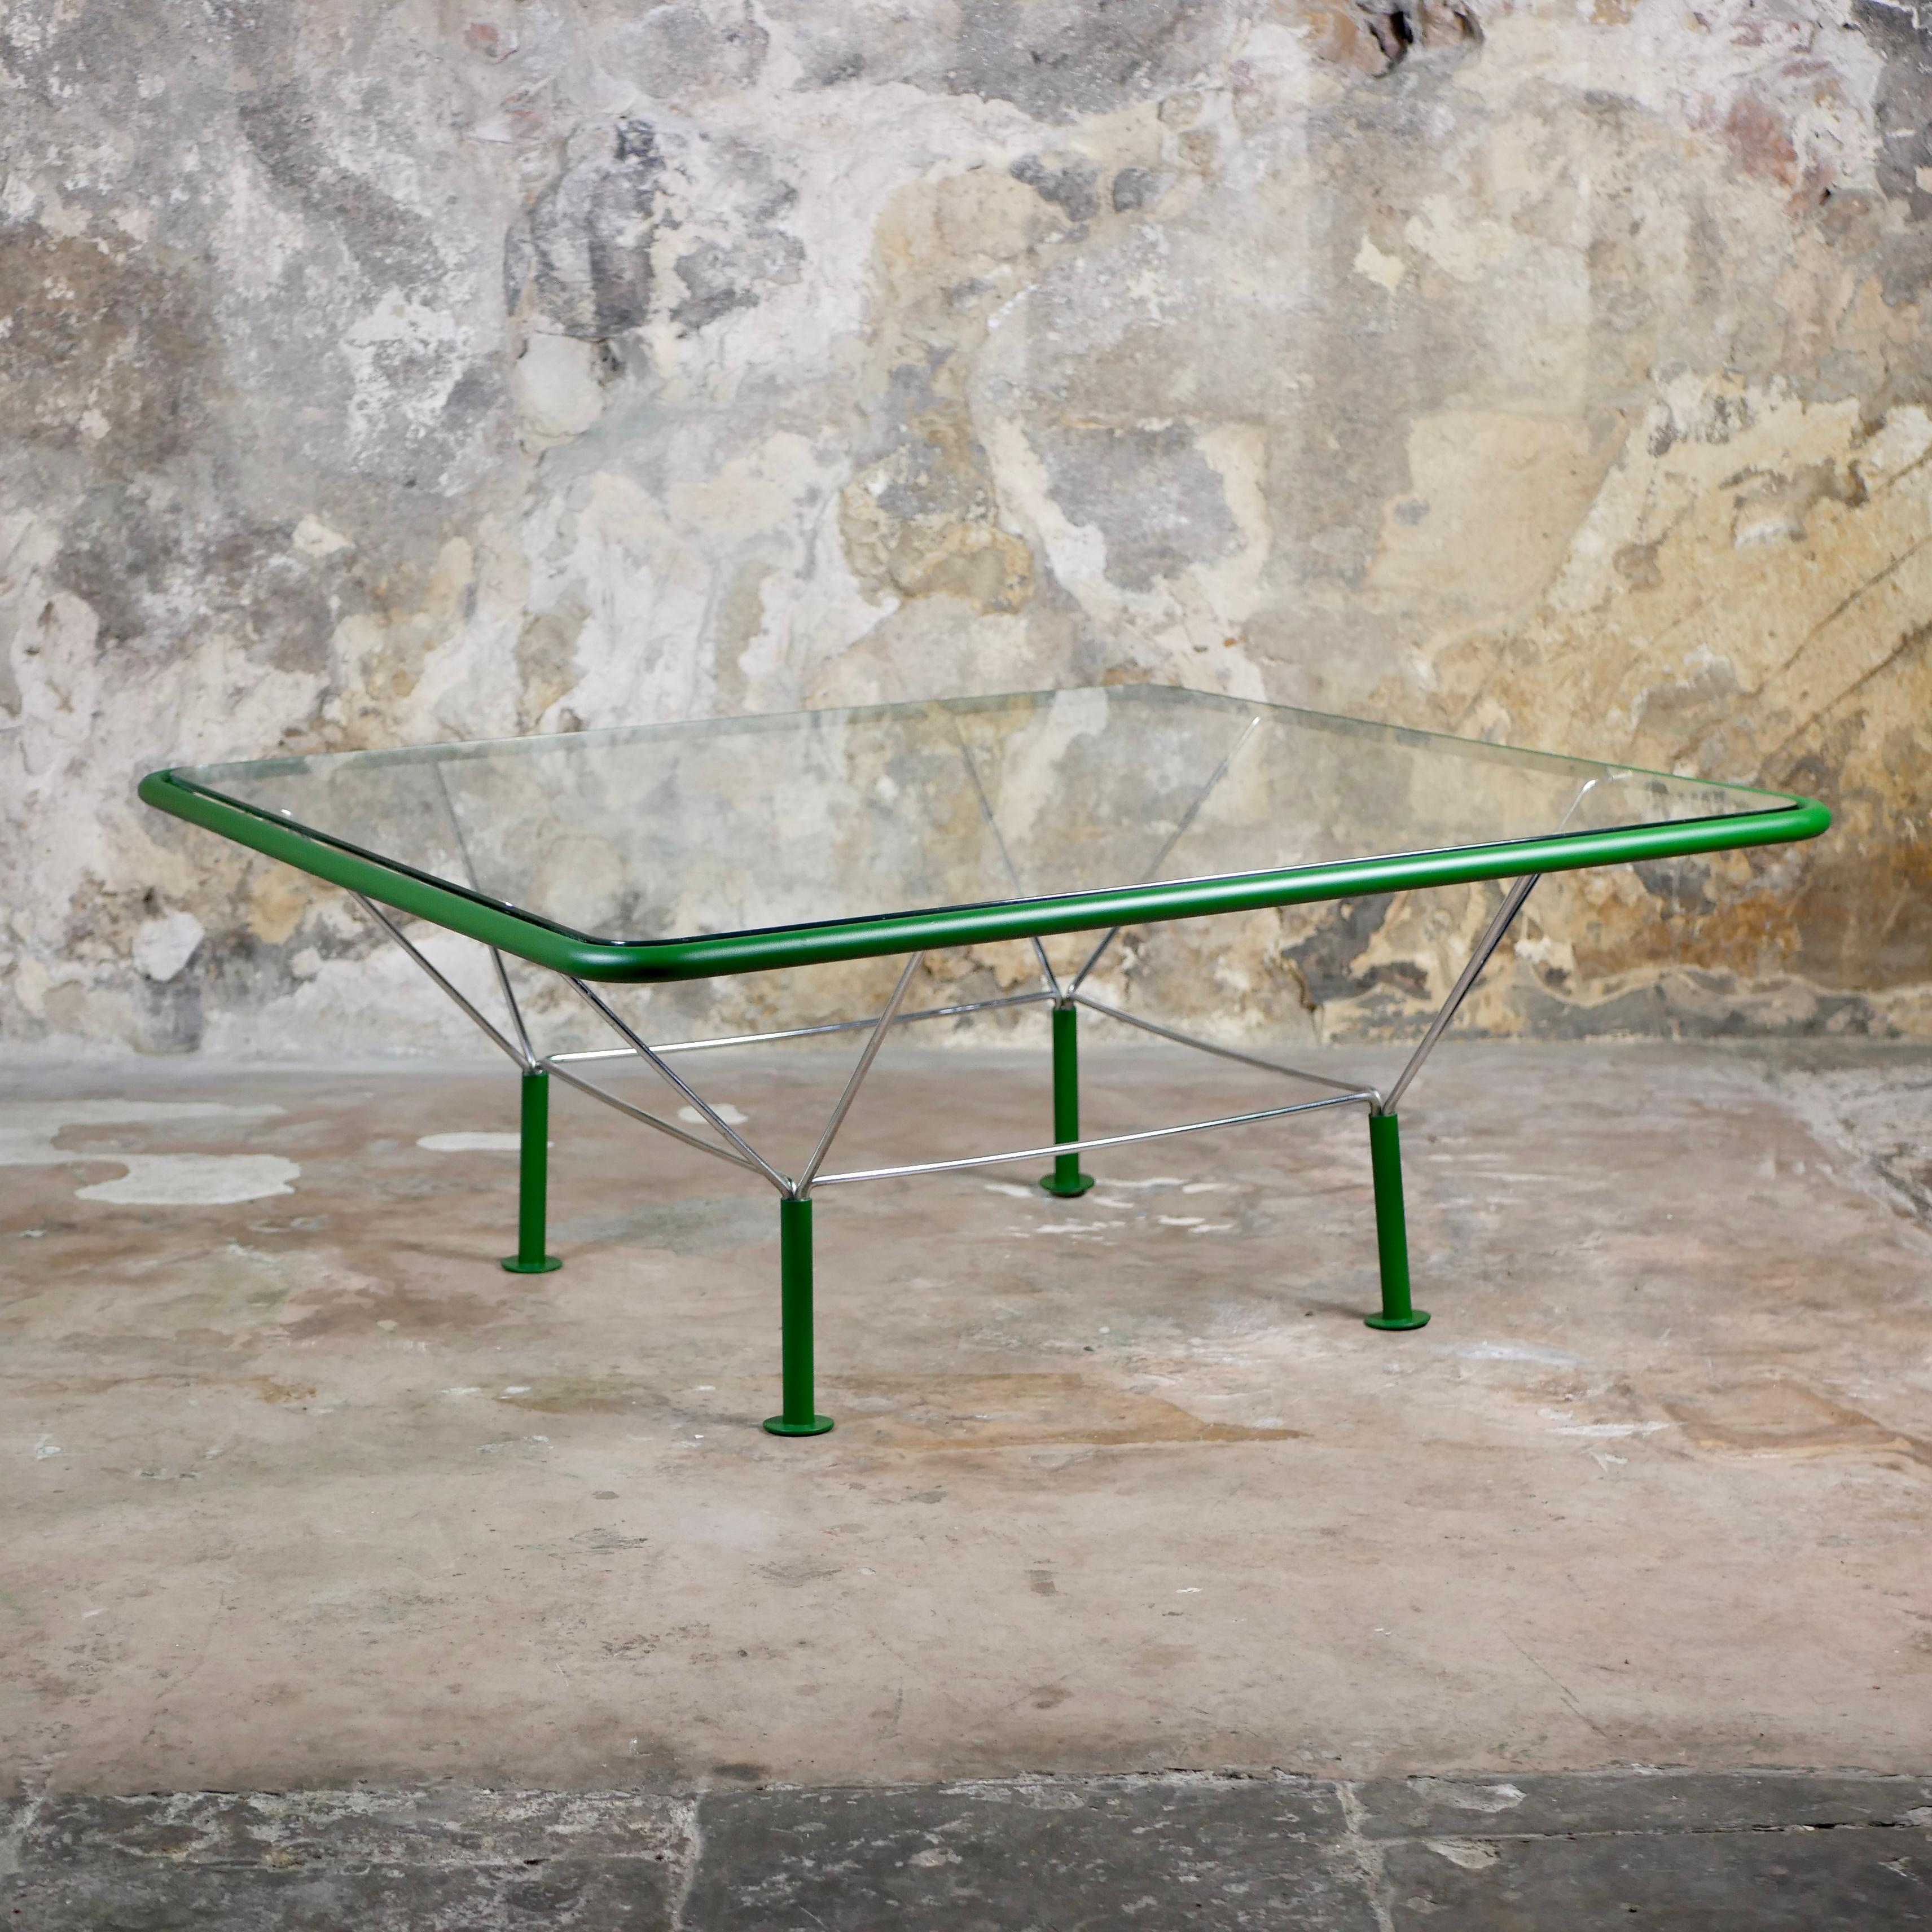 Magnifique et rare table basse de Niels Bendtsen, fabriquée au Danemark dans les années 1970.
Structure en métal tubulaire, finition, plateau en verre.
Bon état, quelques rayures sur le dessus.
Dimensions : L100, P100, H40